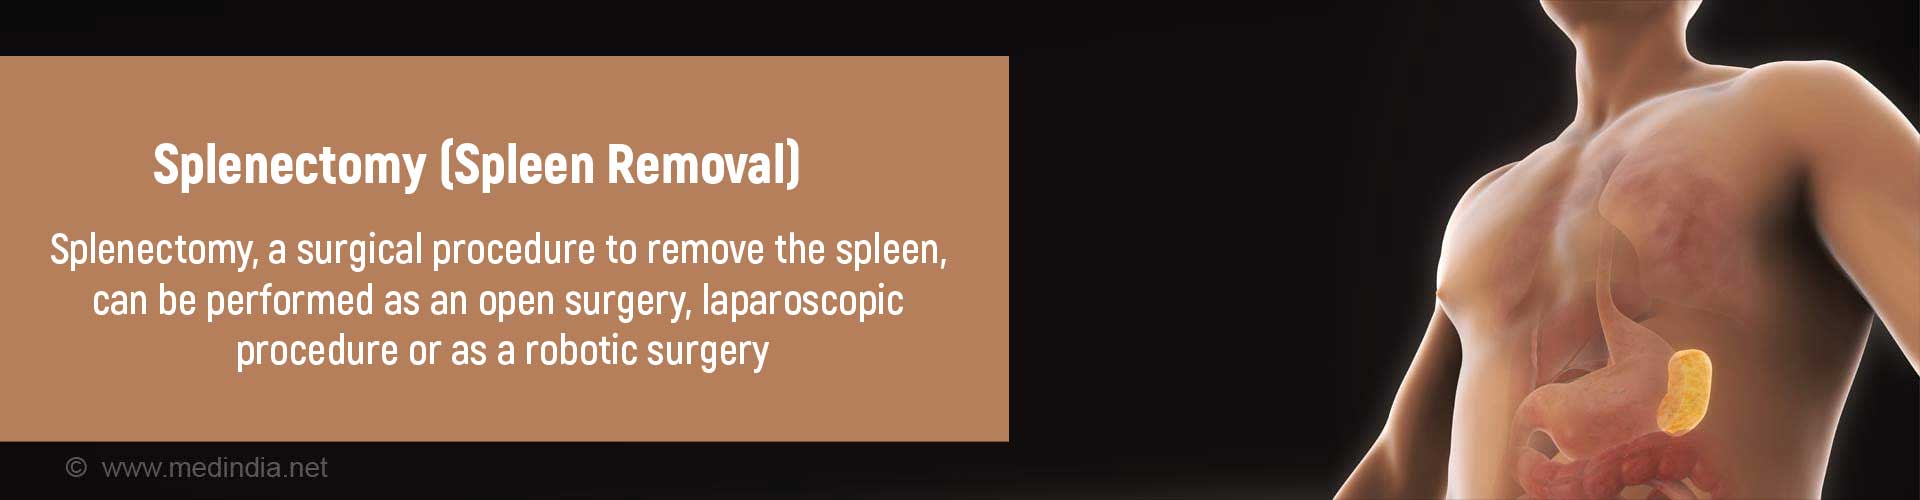 Splenectomy (Spleen Removal)